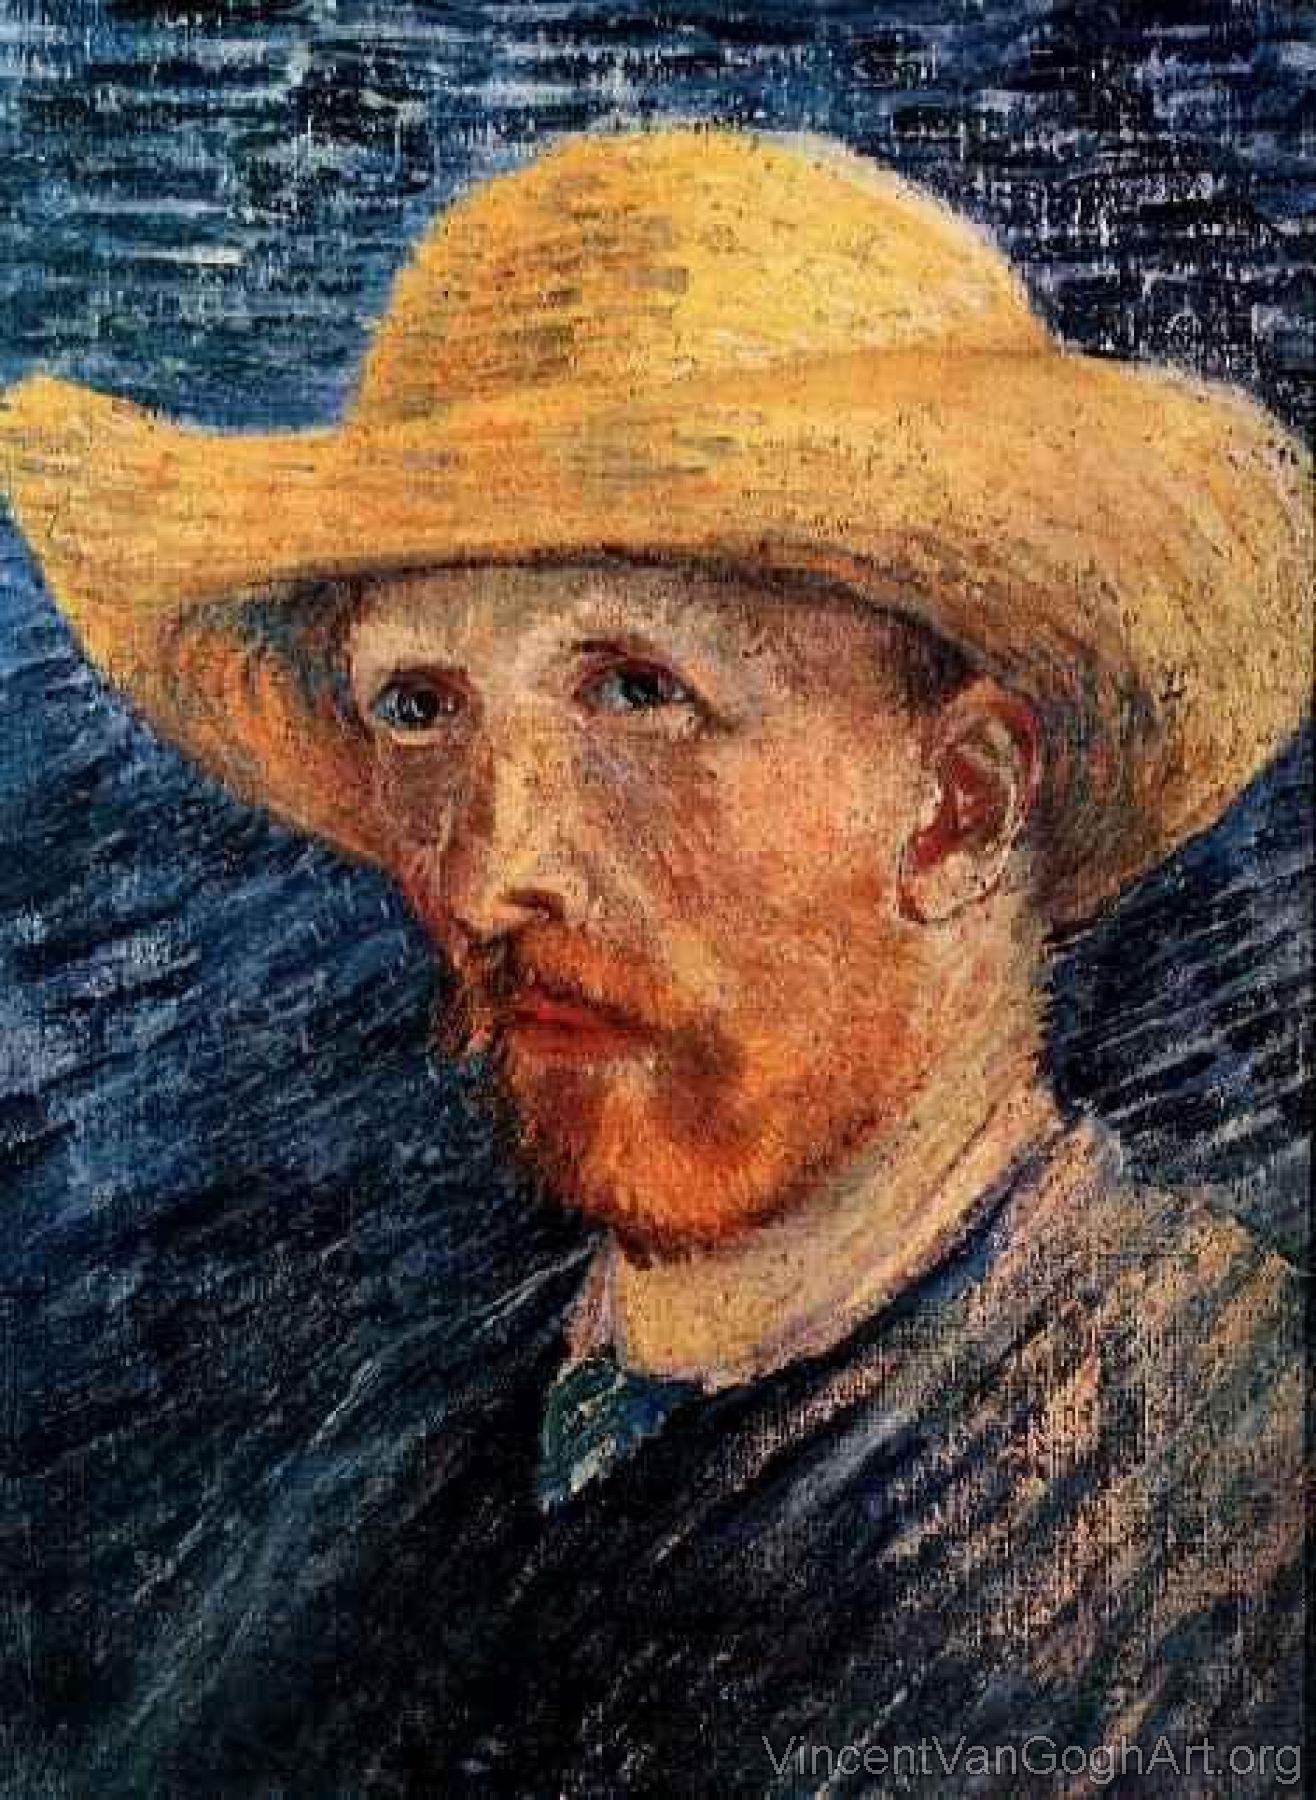 Self Portrait with Straw Hat, II